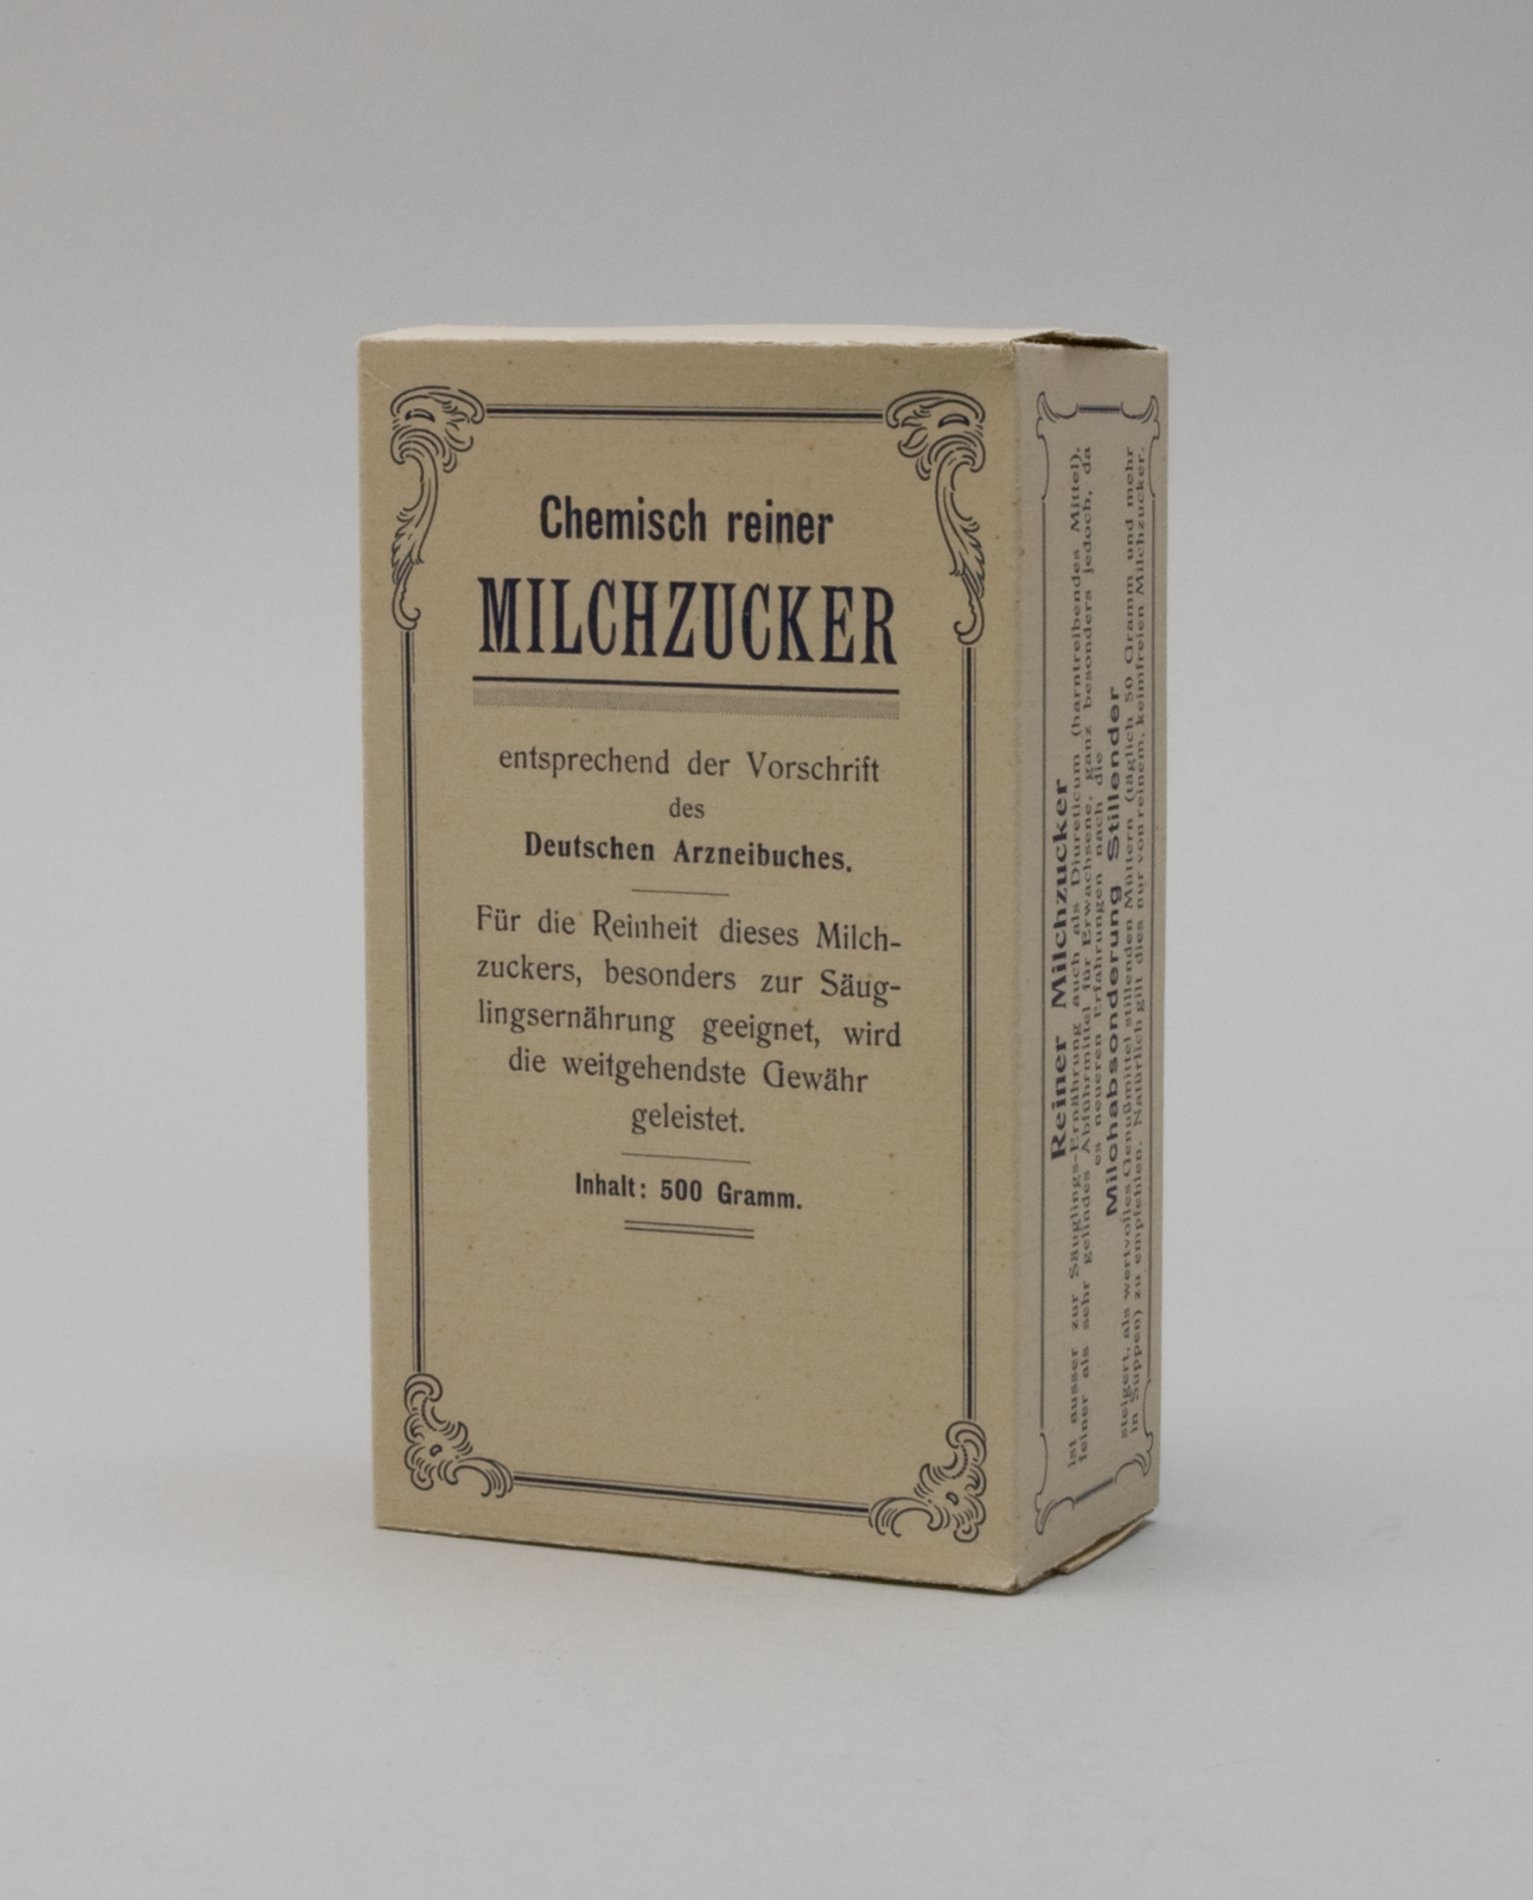 Schaupackung "Milchzucker" (Stiftung Domäne Dahlem - Landgut und Museum, Weiternutzung nur mit Genehmigung des Museums CC BY-NC-SA)